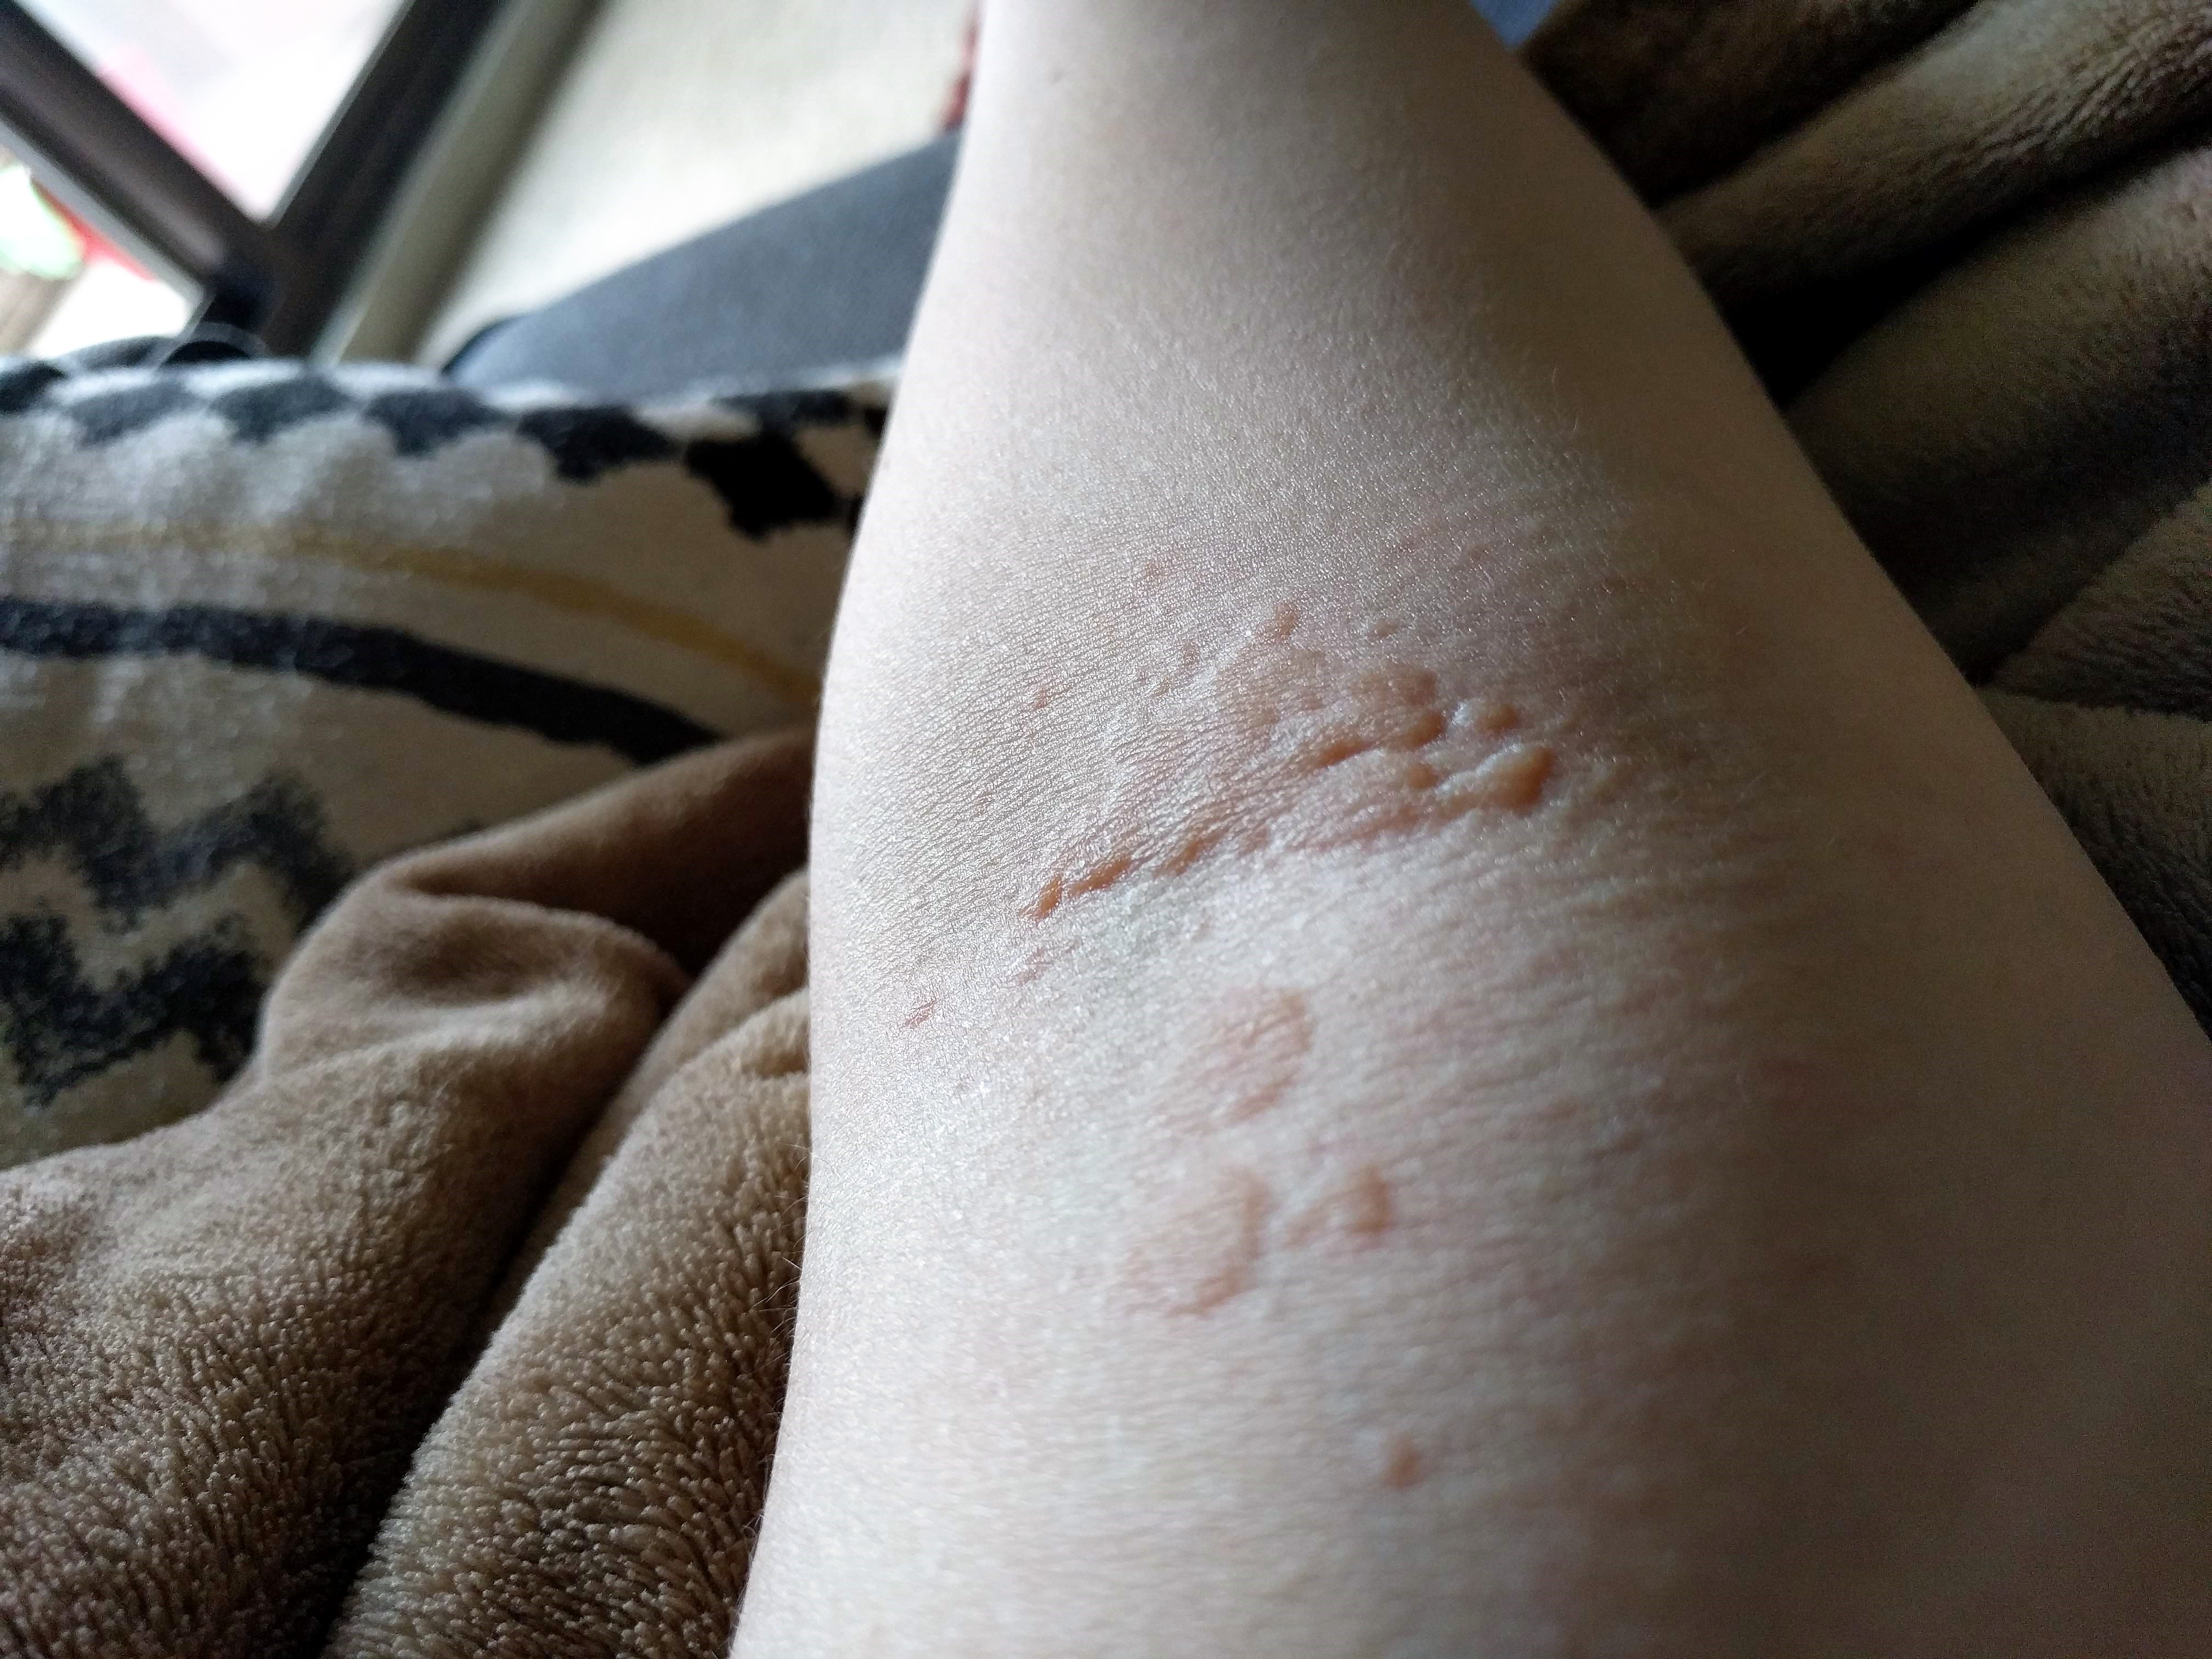 tiny pinpoint rash